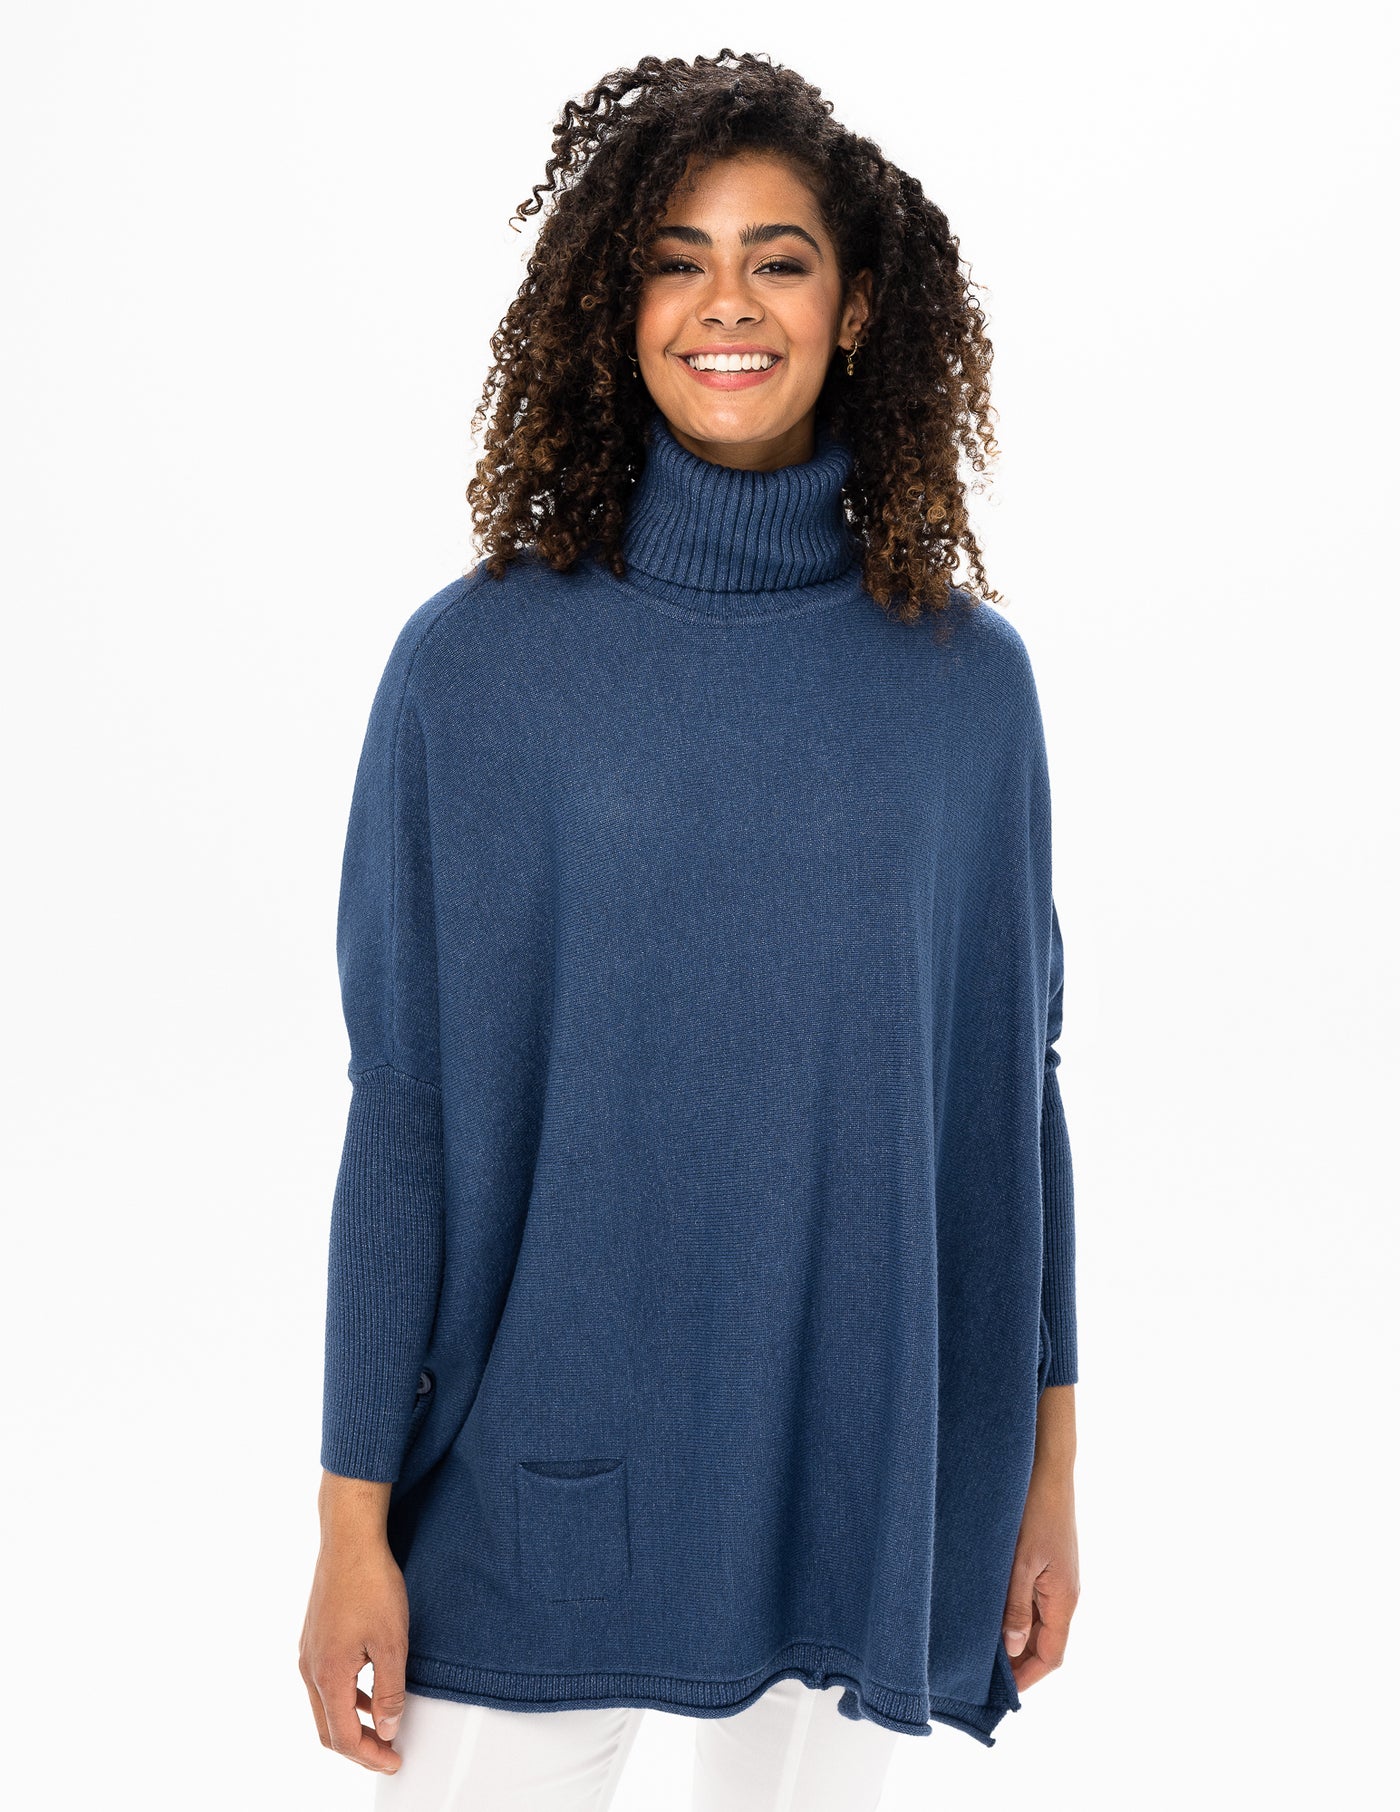 Knit Turtleneck Sweater/Tunic - Indigo Heather